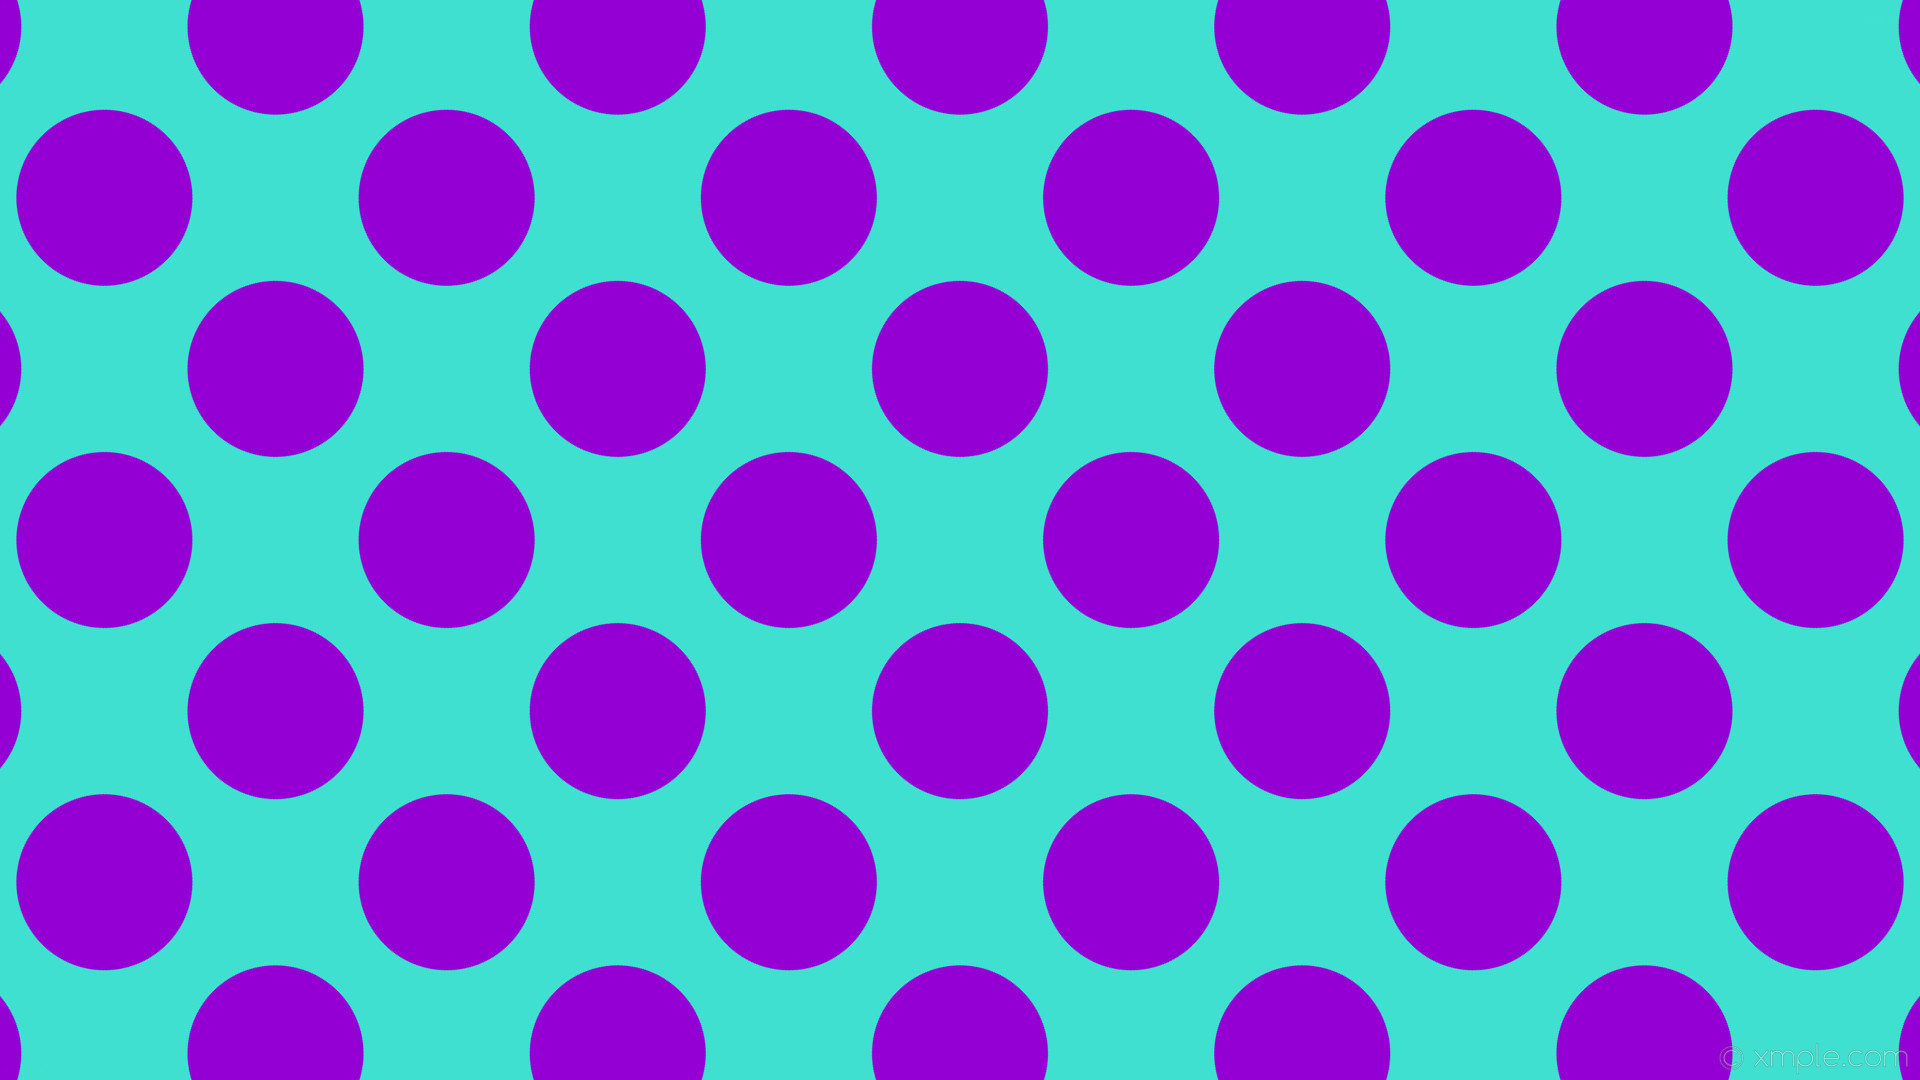 1920x1080 wallpaper polka dots spots purple blue turquoise dark violet #40e0d0  #9400d3 135Â° 176px